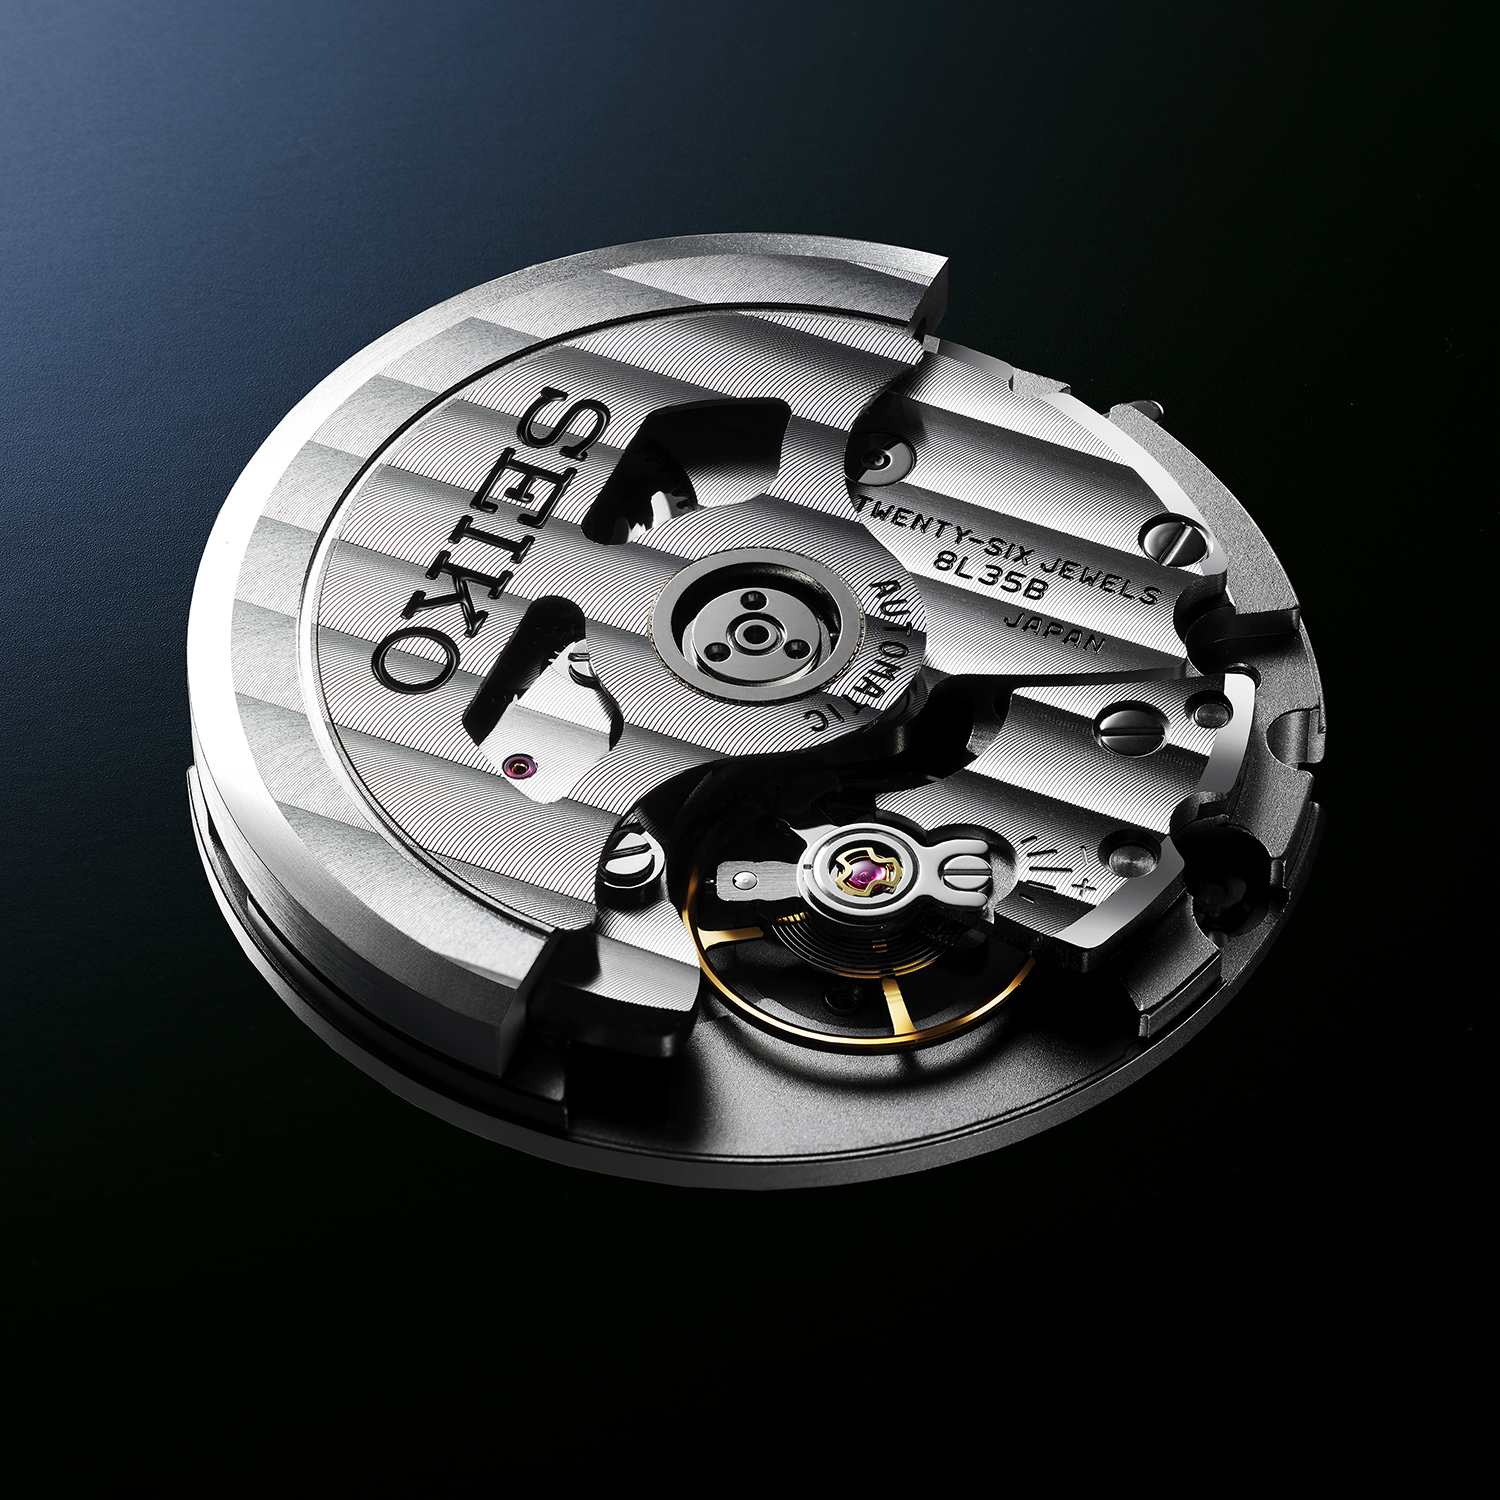 Mehanizam kalibar 8L35 posebno je razvijen za ronilačke satove, a ručno ga sastavljaju Seikovi najvještiji majstori